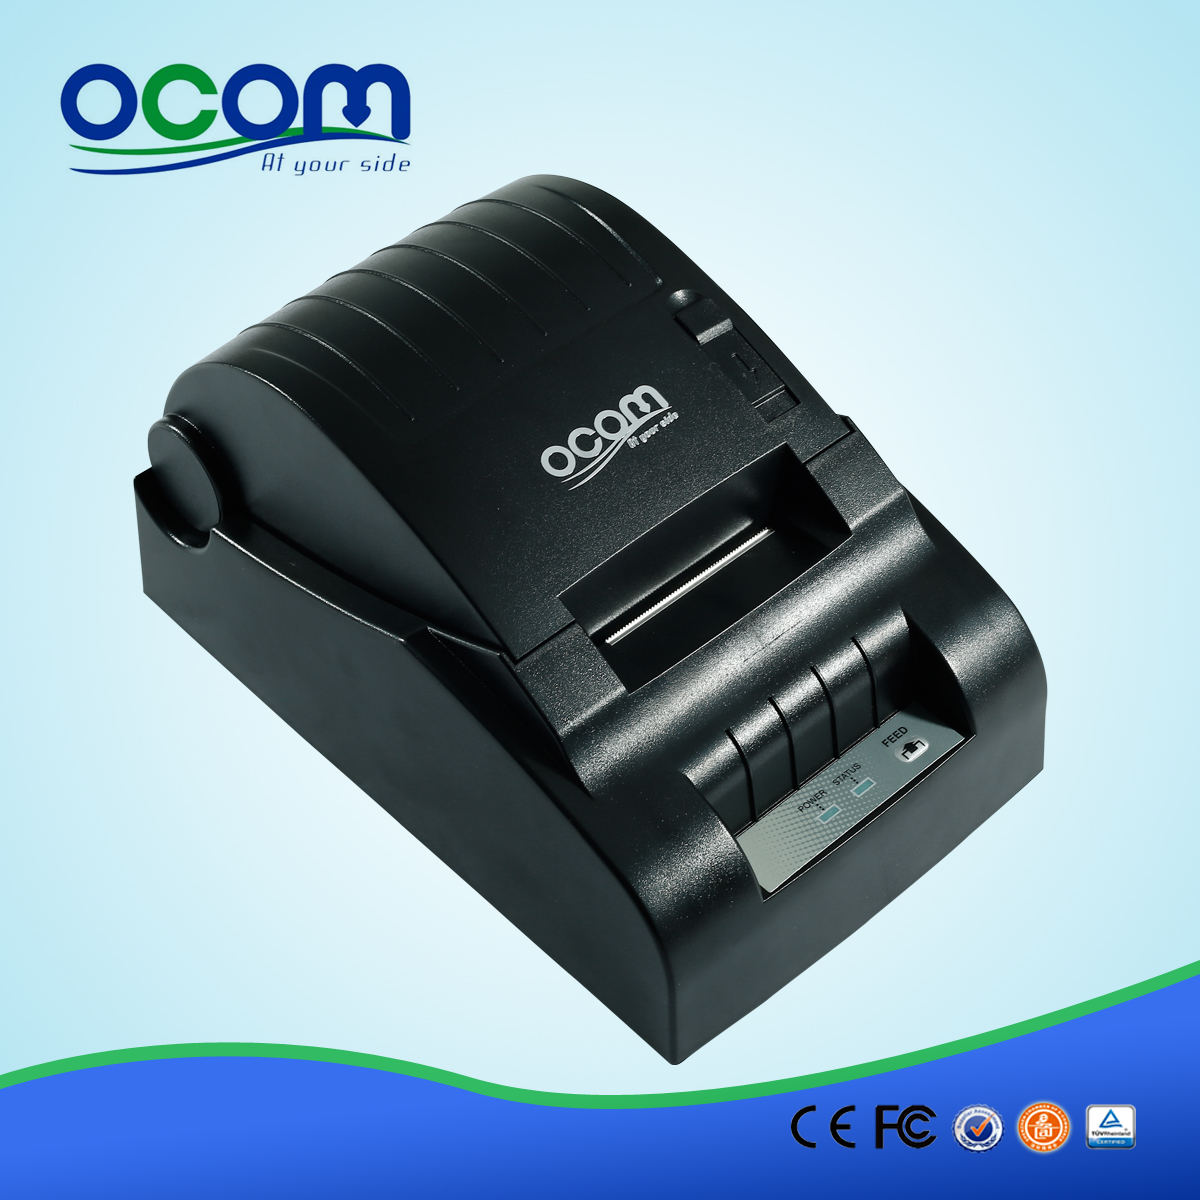 58mm machine de billet d'imprimante avec moudle fiable (OCPP-582)